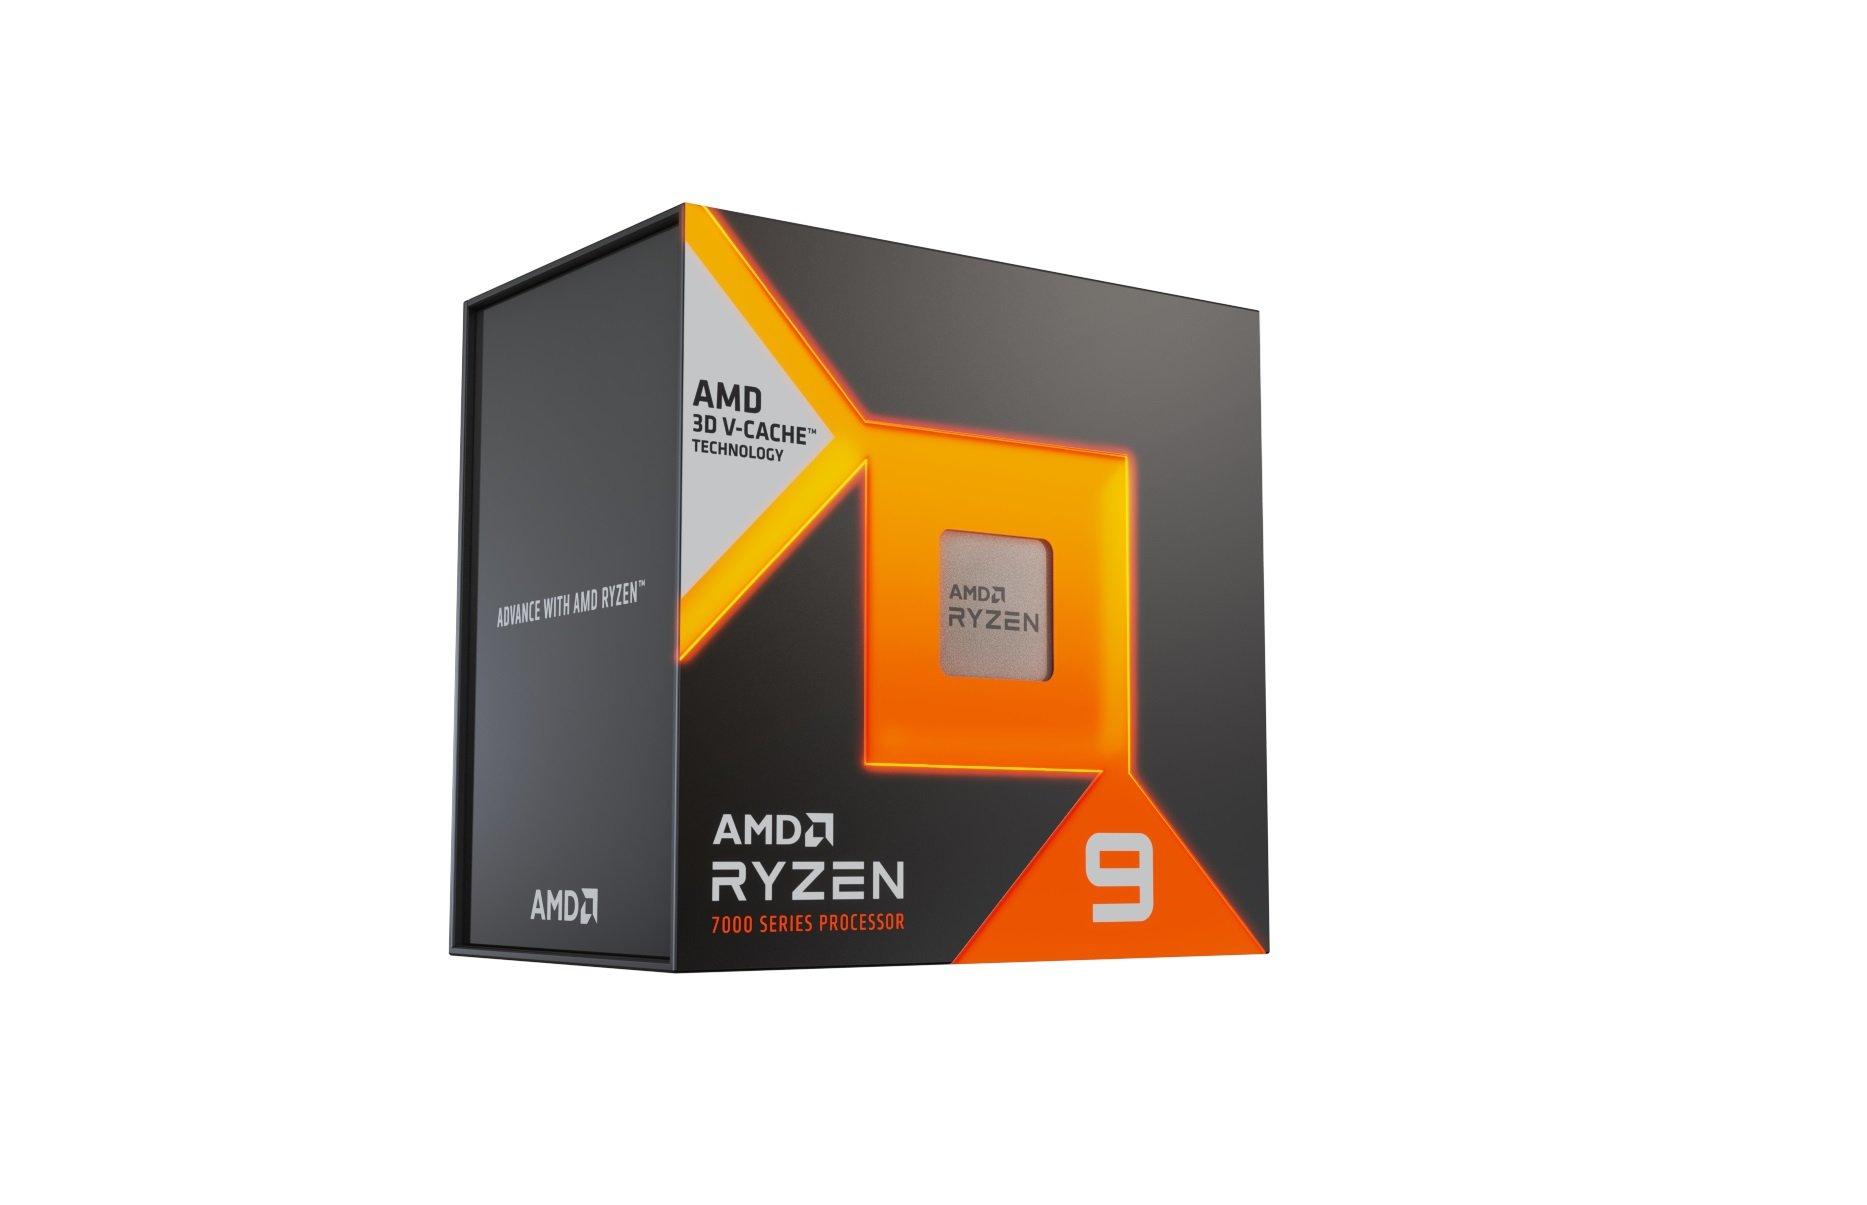 新品未開封 AMD Ryzen9 7900X3D W/O Cooler